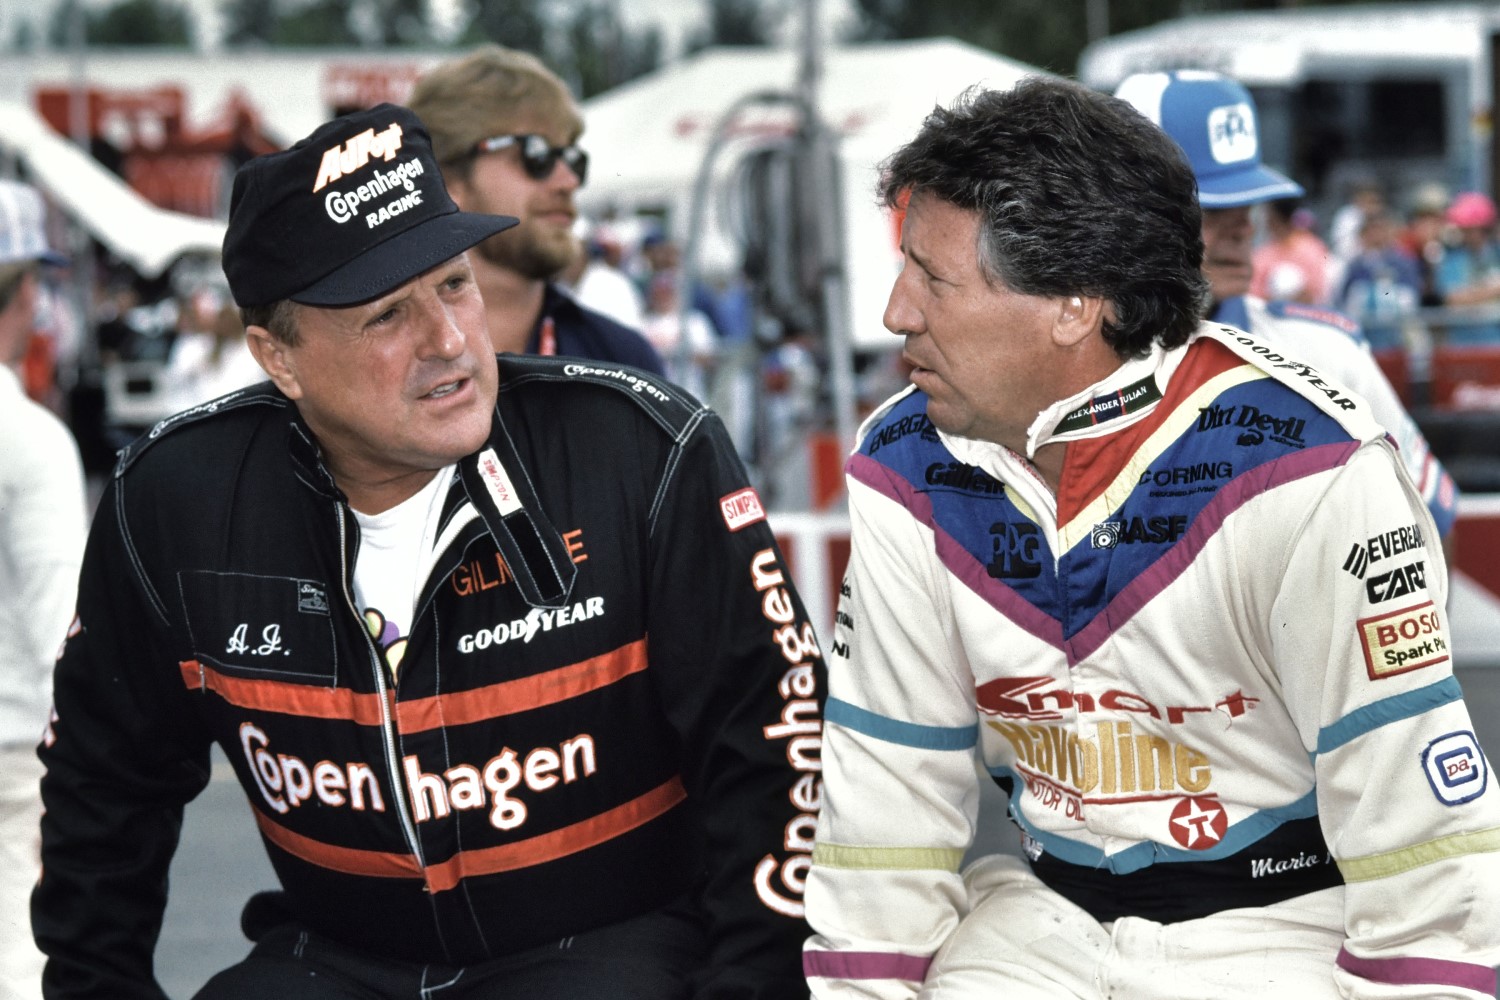 1991 AJ Foyt and Mario Andretti